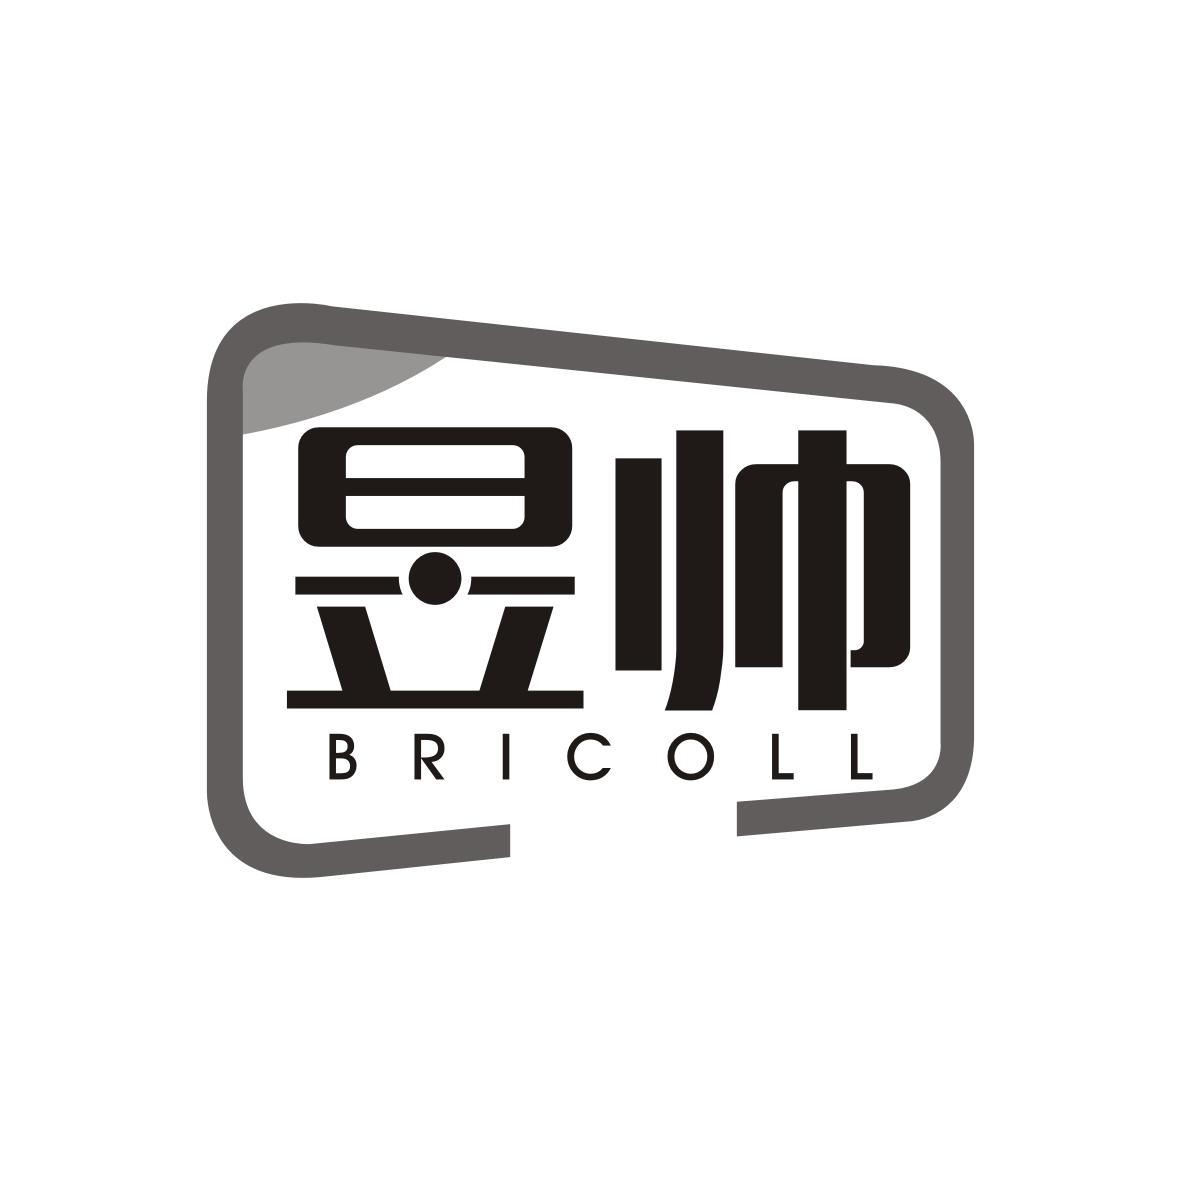 郭泽辉商标昱帅 BRICOLL（09类）多少钱？